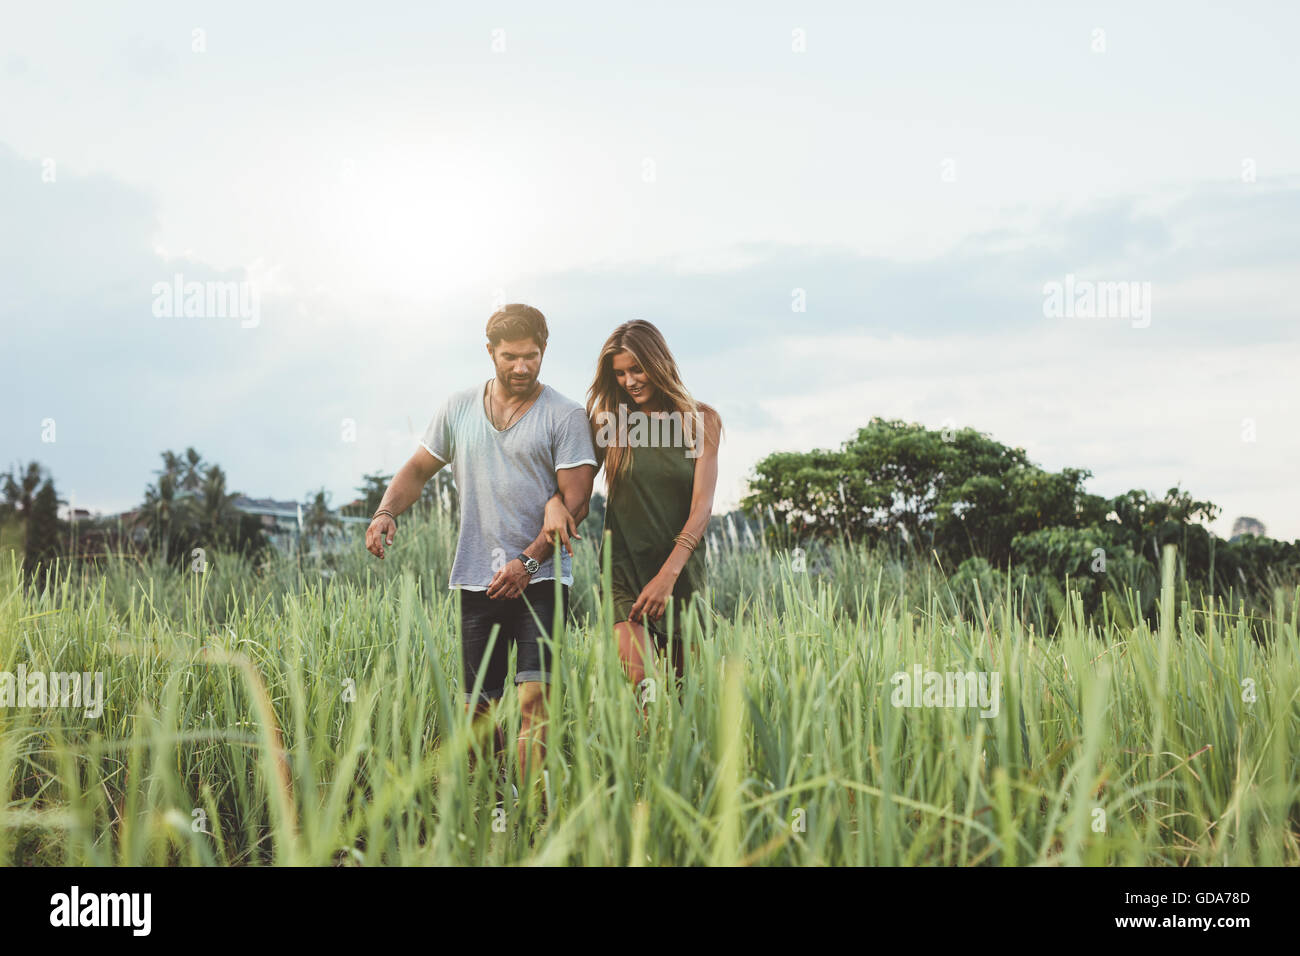 Piscine shot of young couple walking through grass field. L'homme et la femme marche dans la nature. Banque D'Images